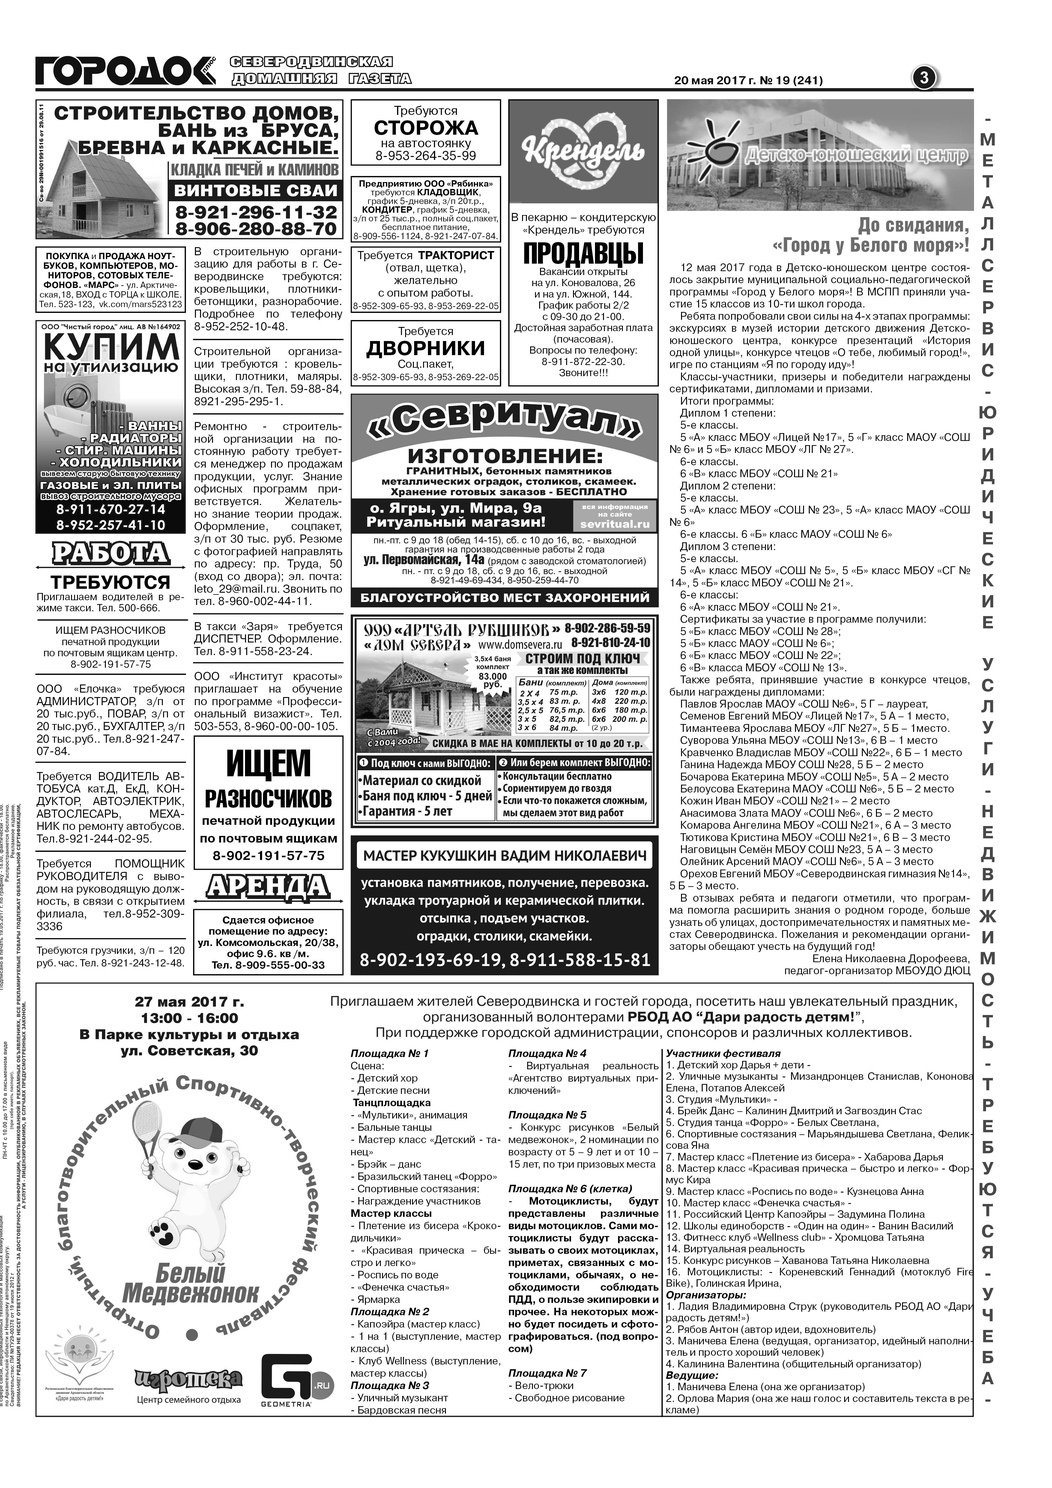 Городок плюс, выпуск номер 19 от 20 мая 2017 года, страница 3.